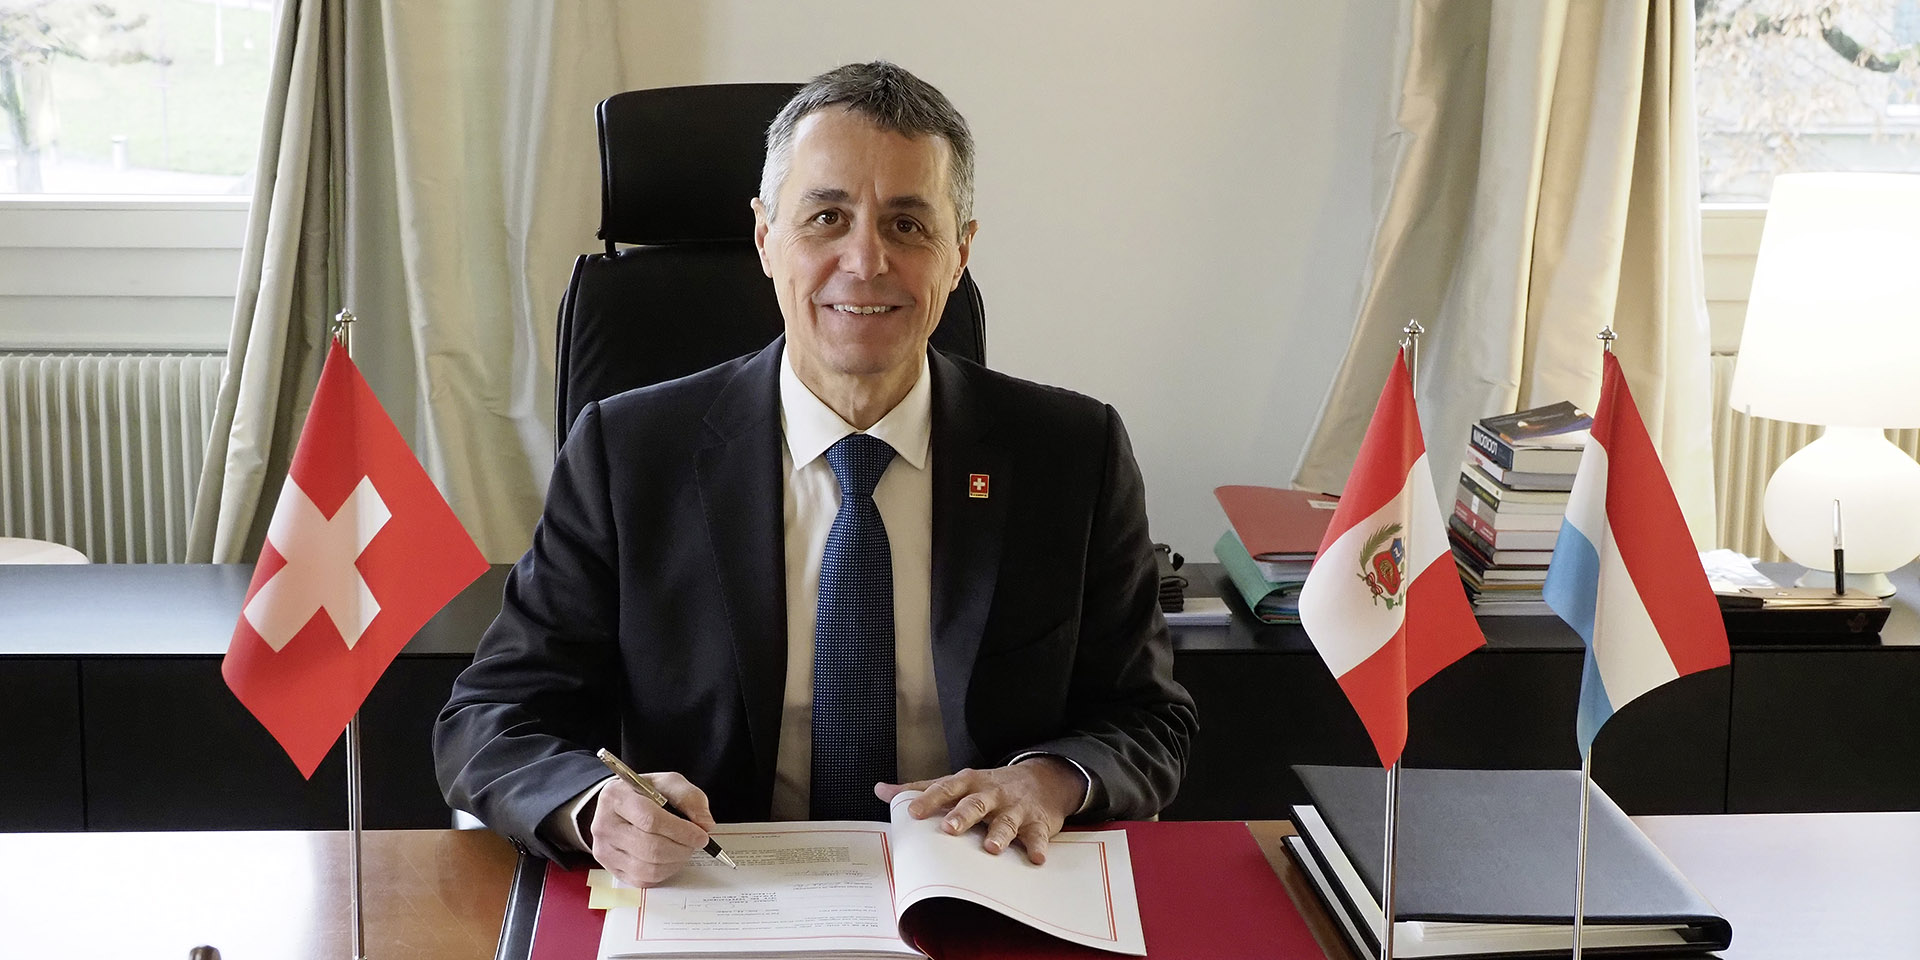 Il consigliere federale Ignazio Cassis firma un documento. Al suo fianco le bandiere della Svizzera (a destra), del Perù e del Lussemburgo (a sinistra).